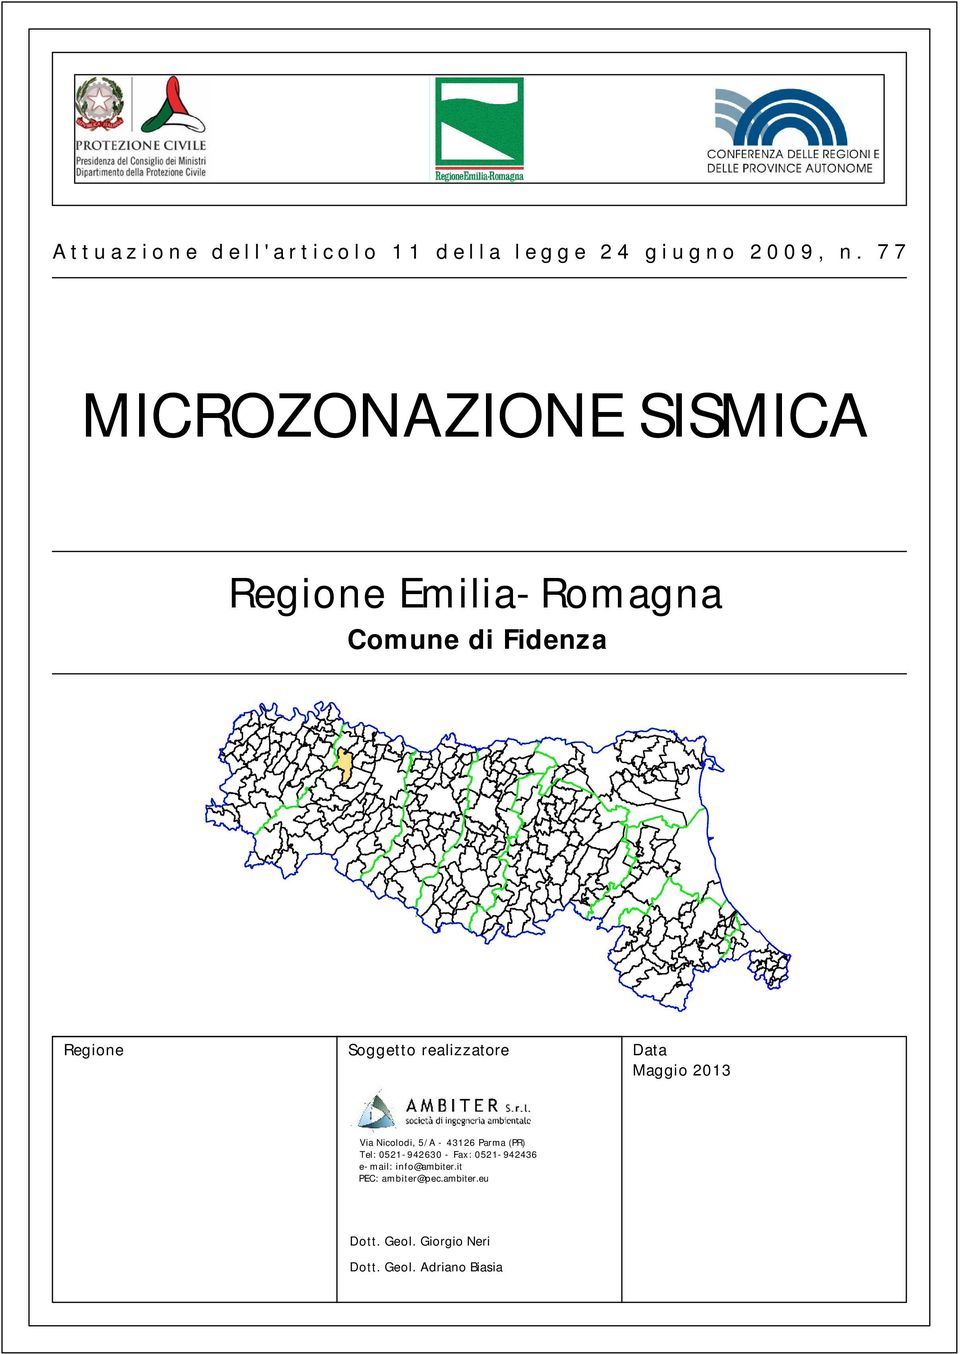 Data Maggio 2013 Via Nicolodi, 5/A - 43126 Parma (PR) Tel: 0521-942630 - Fax: 0521-942436 e-mail: